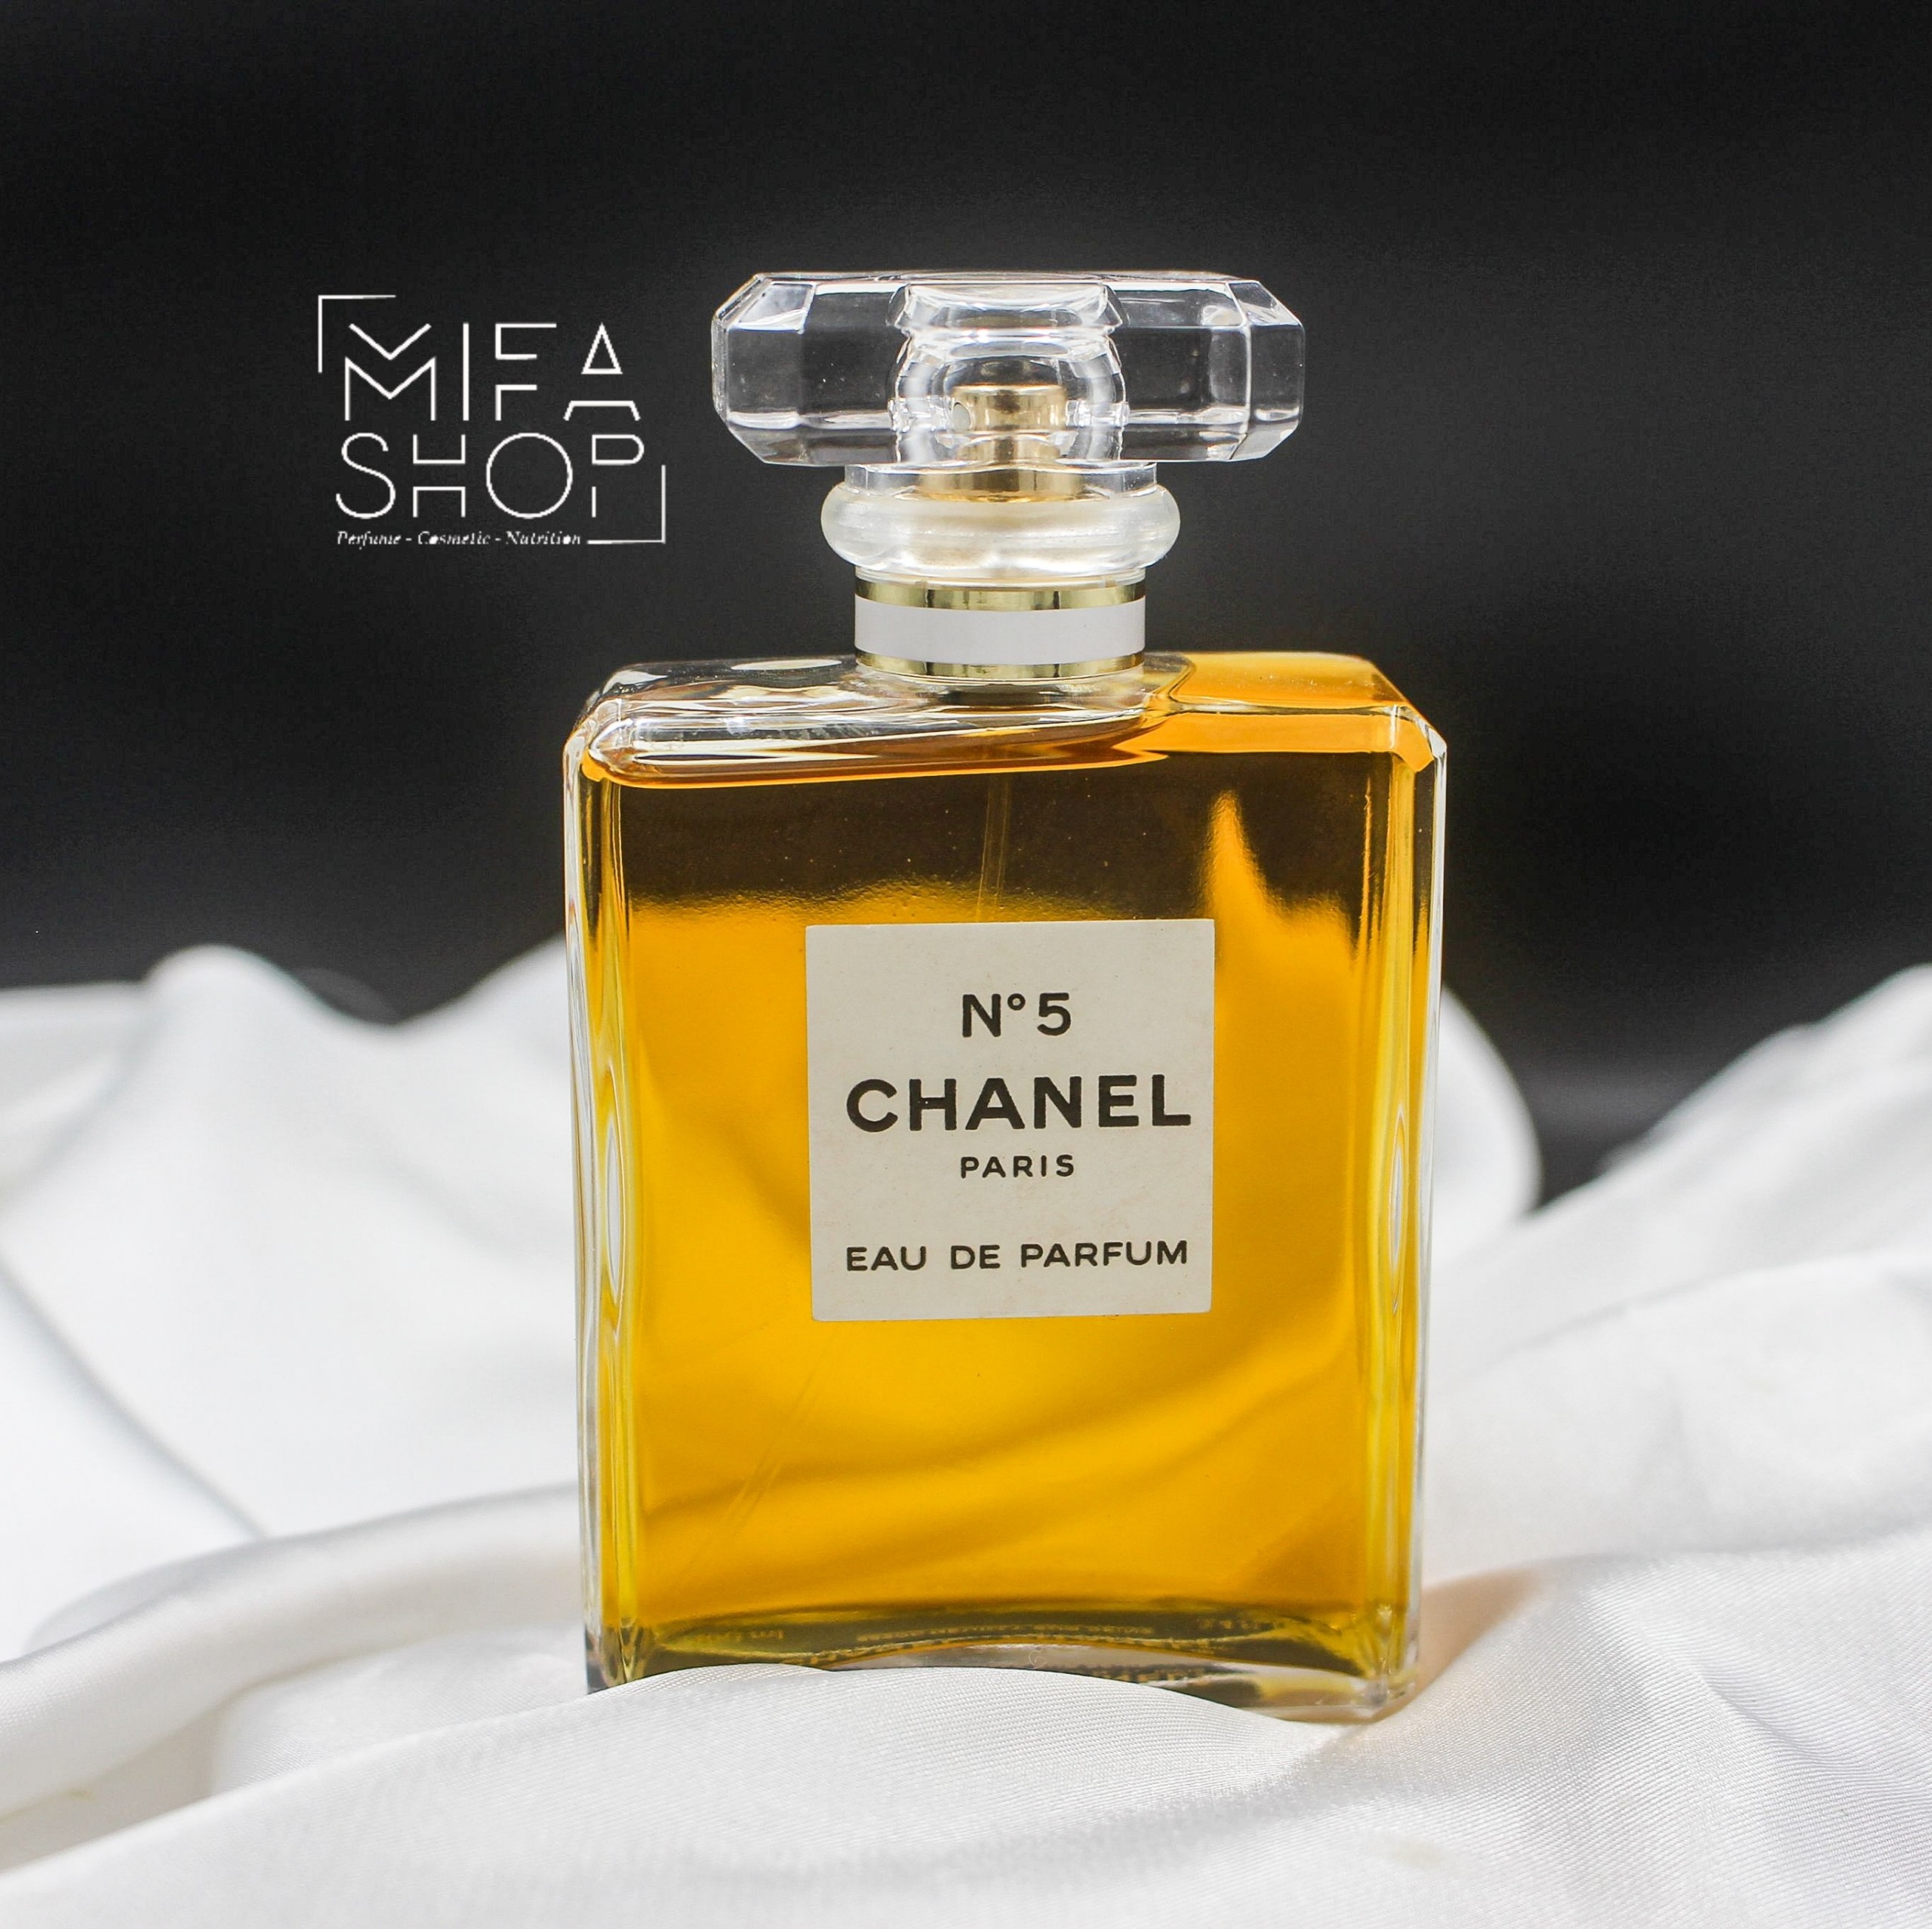 Chanel no5 eau de parfum nữ hoàng tỏa hương | Mifashop